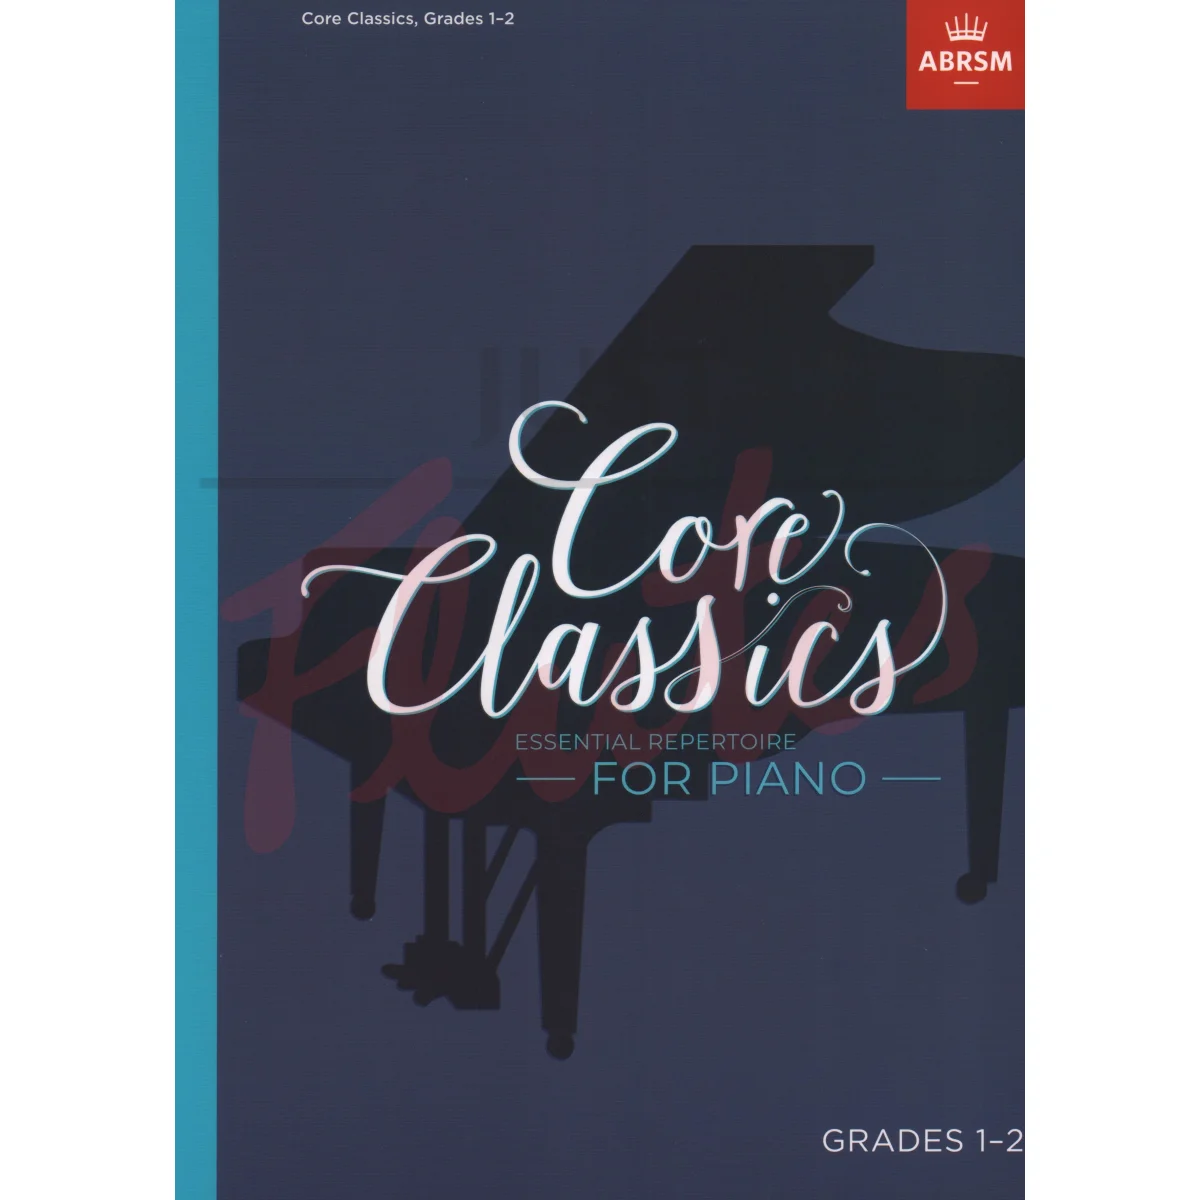 Core Classics Grades 1-2 Essential Repertoire for Piano